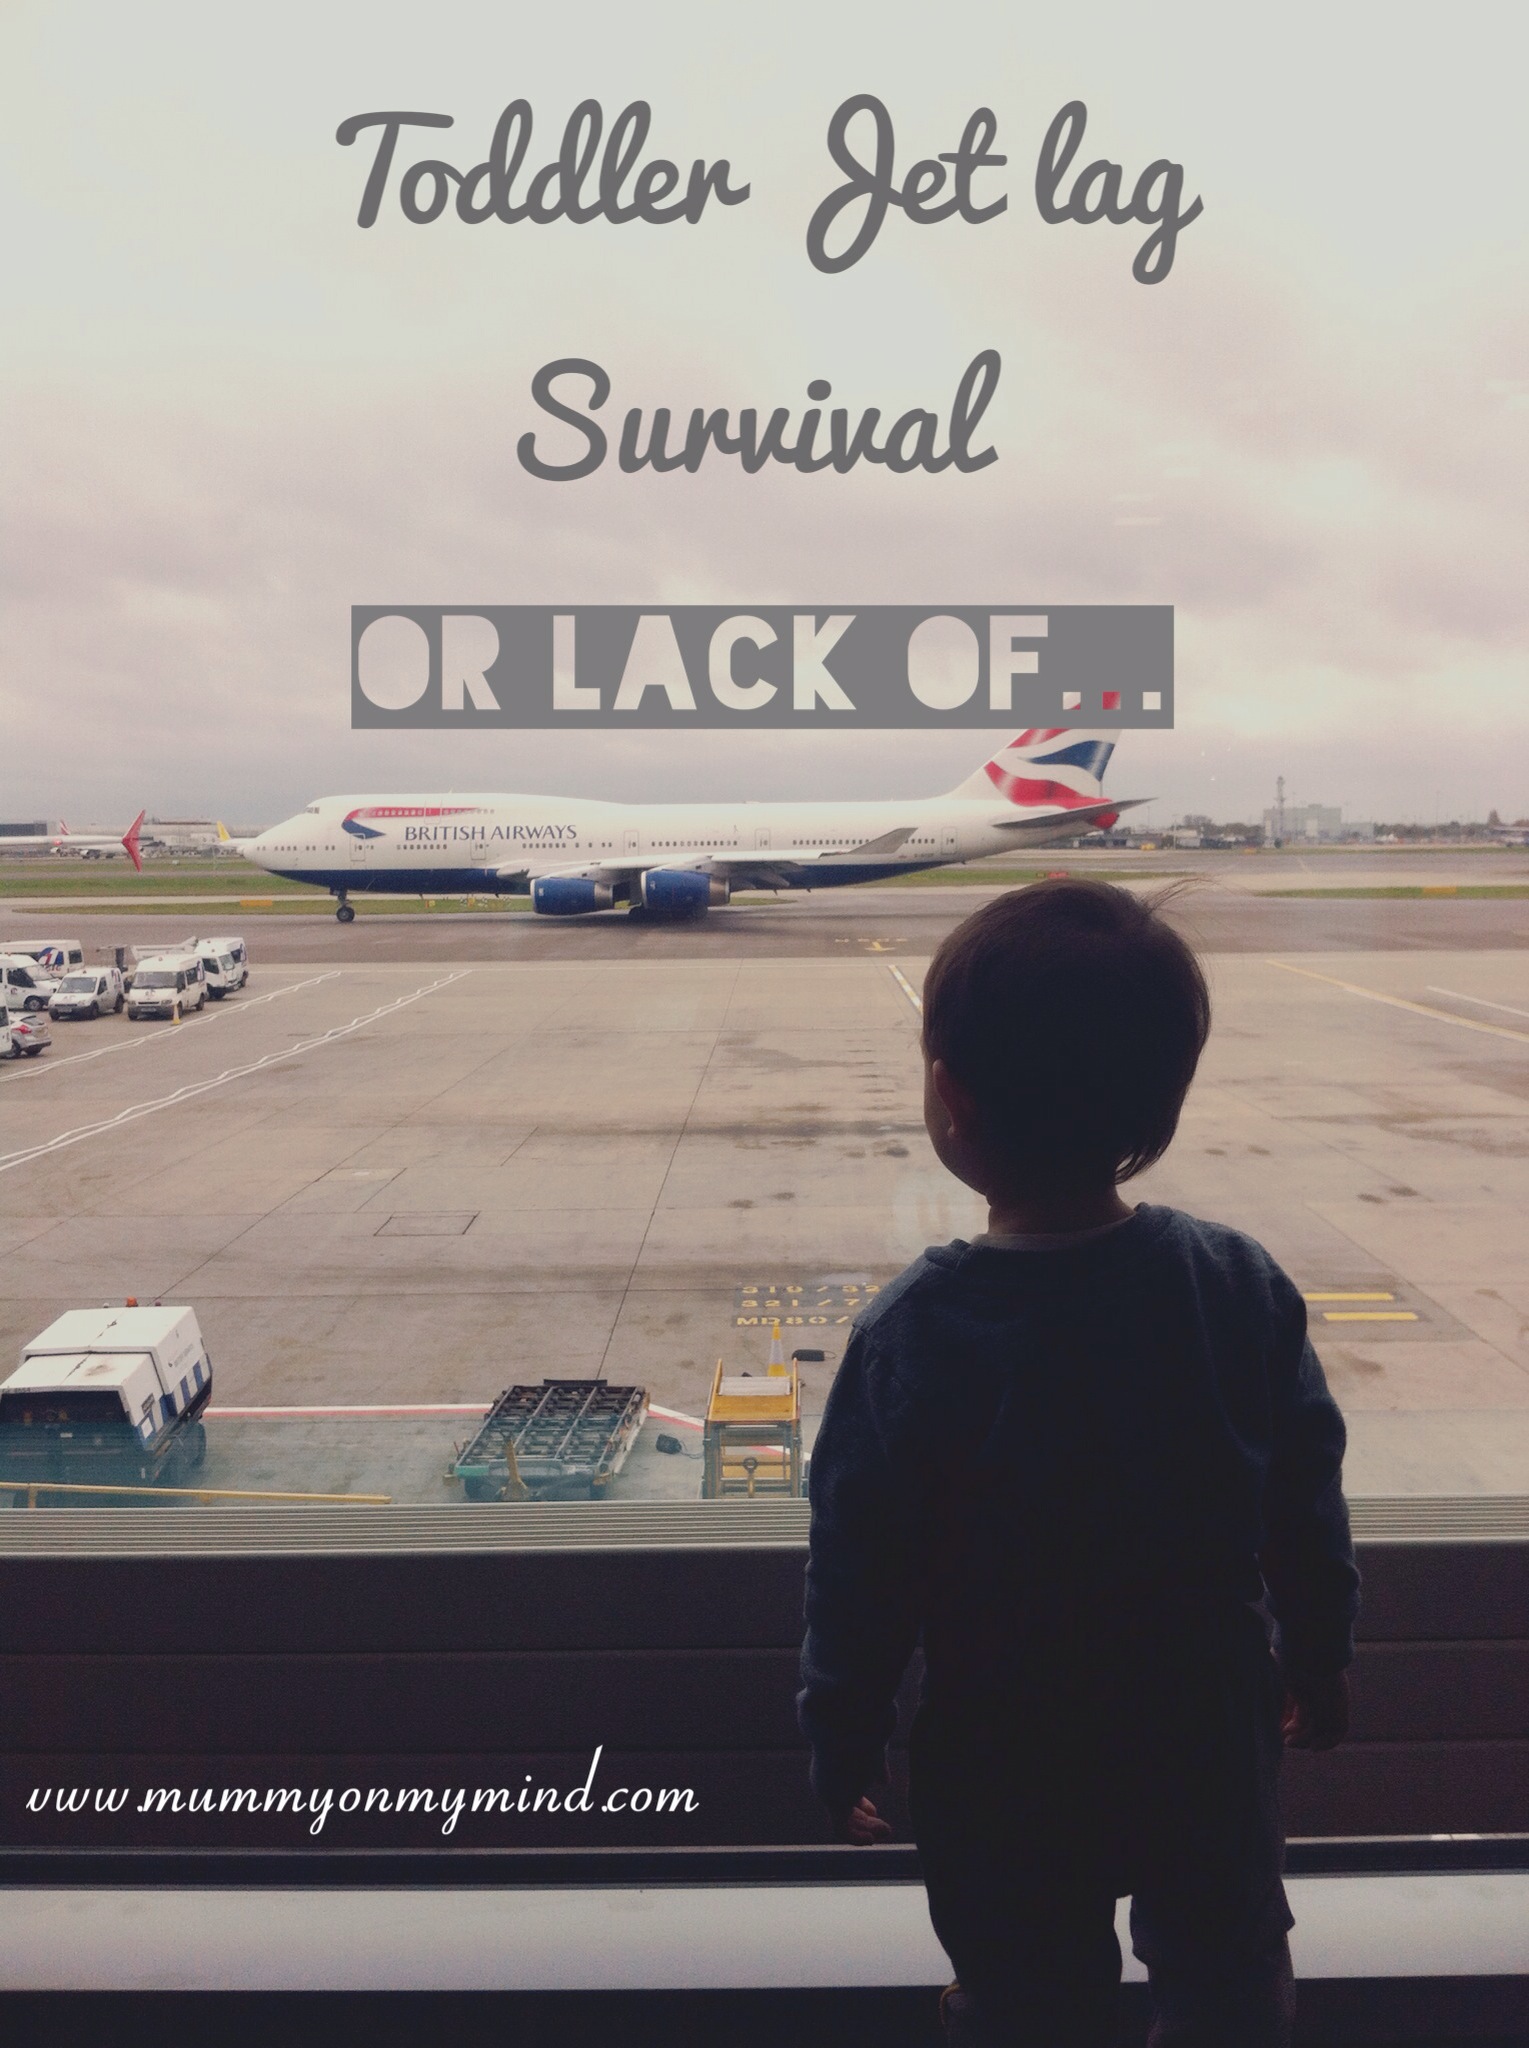 Toddler Jet lag Survival or lack of…